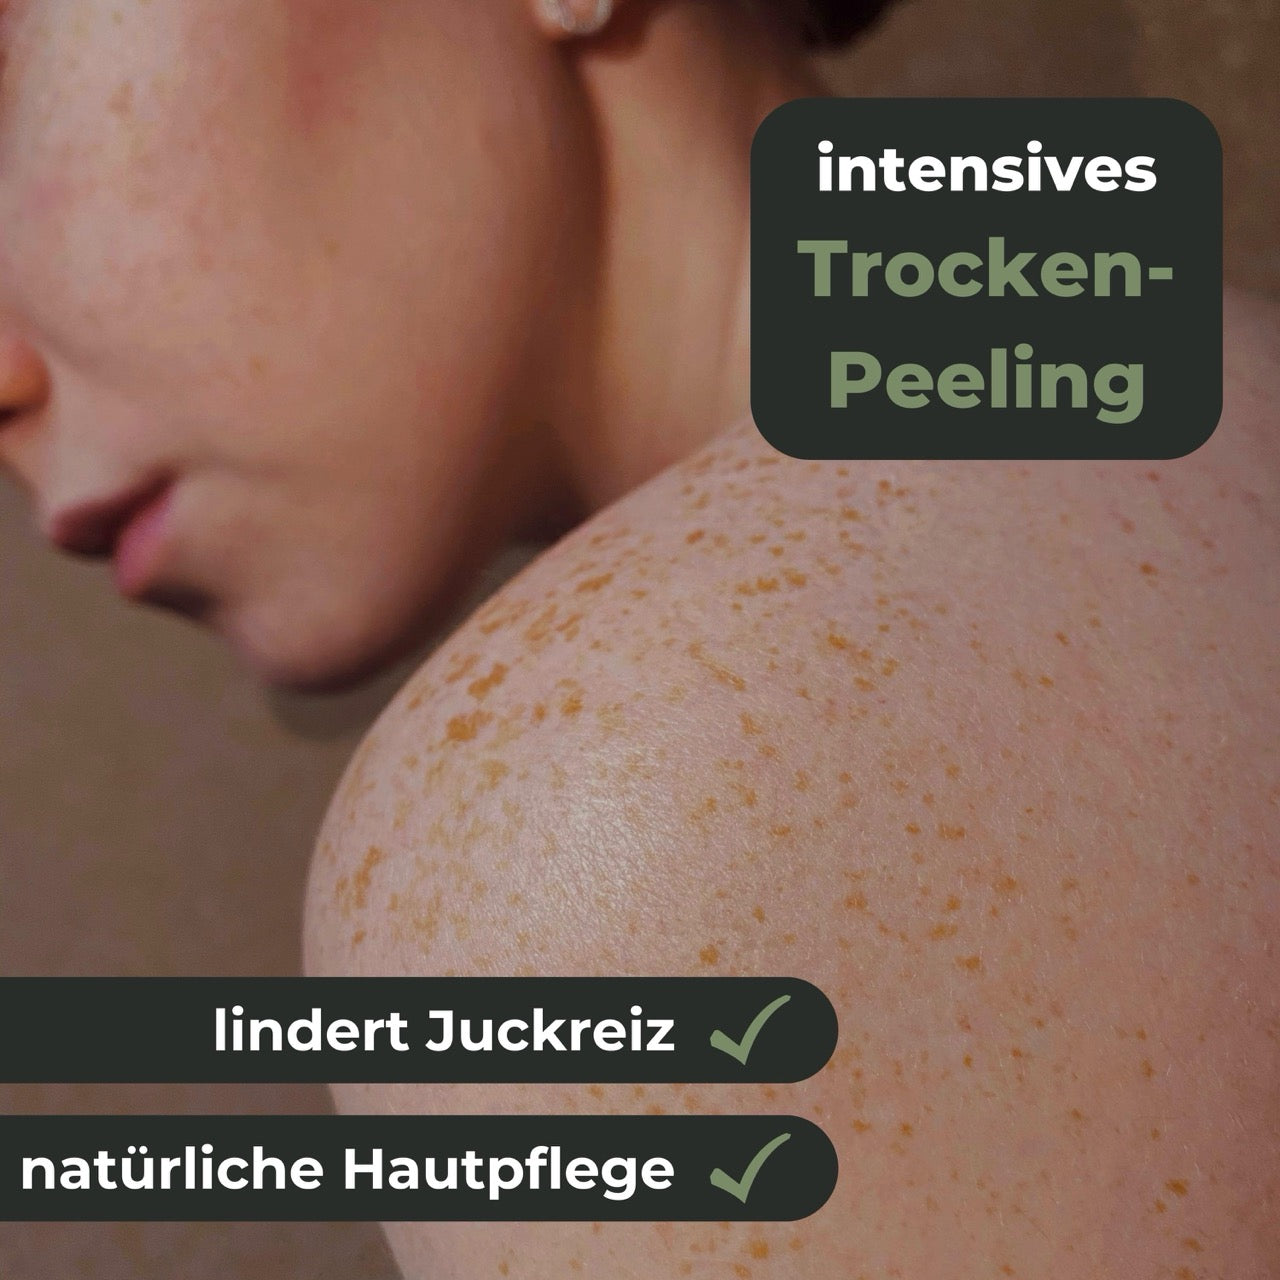 Trockenpeeling hilft bei juckender Haut natürliche Hautpflege schnelle Hilfe bei Juckreiz